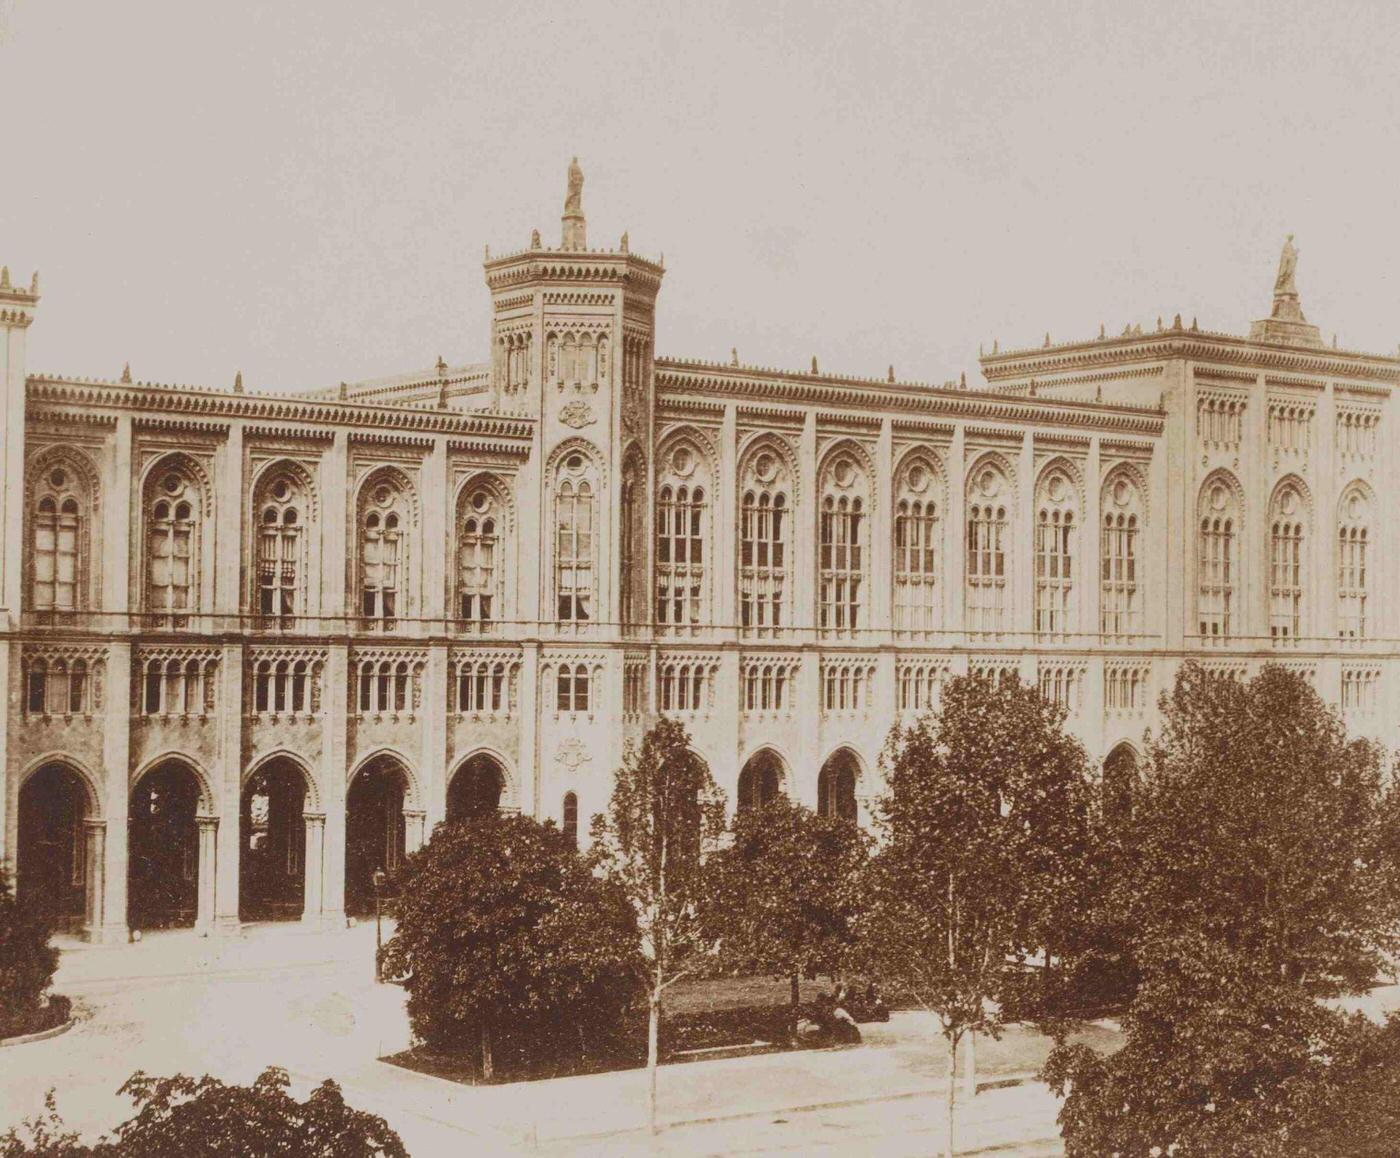 Konigliche Regierung, Munich, 1880